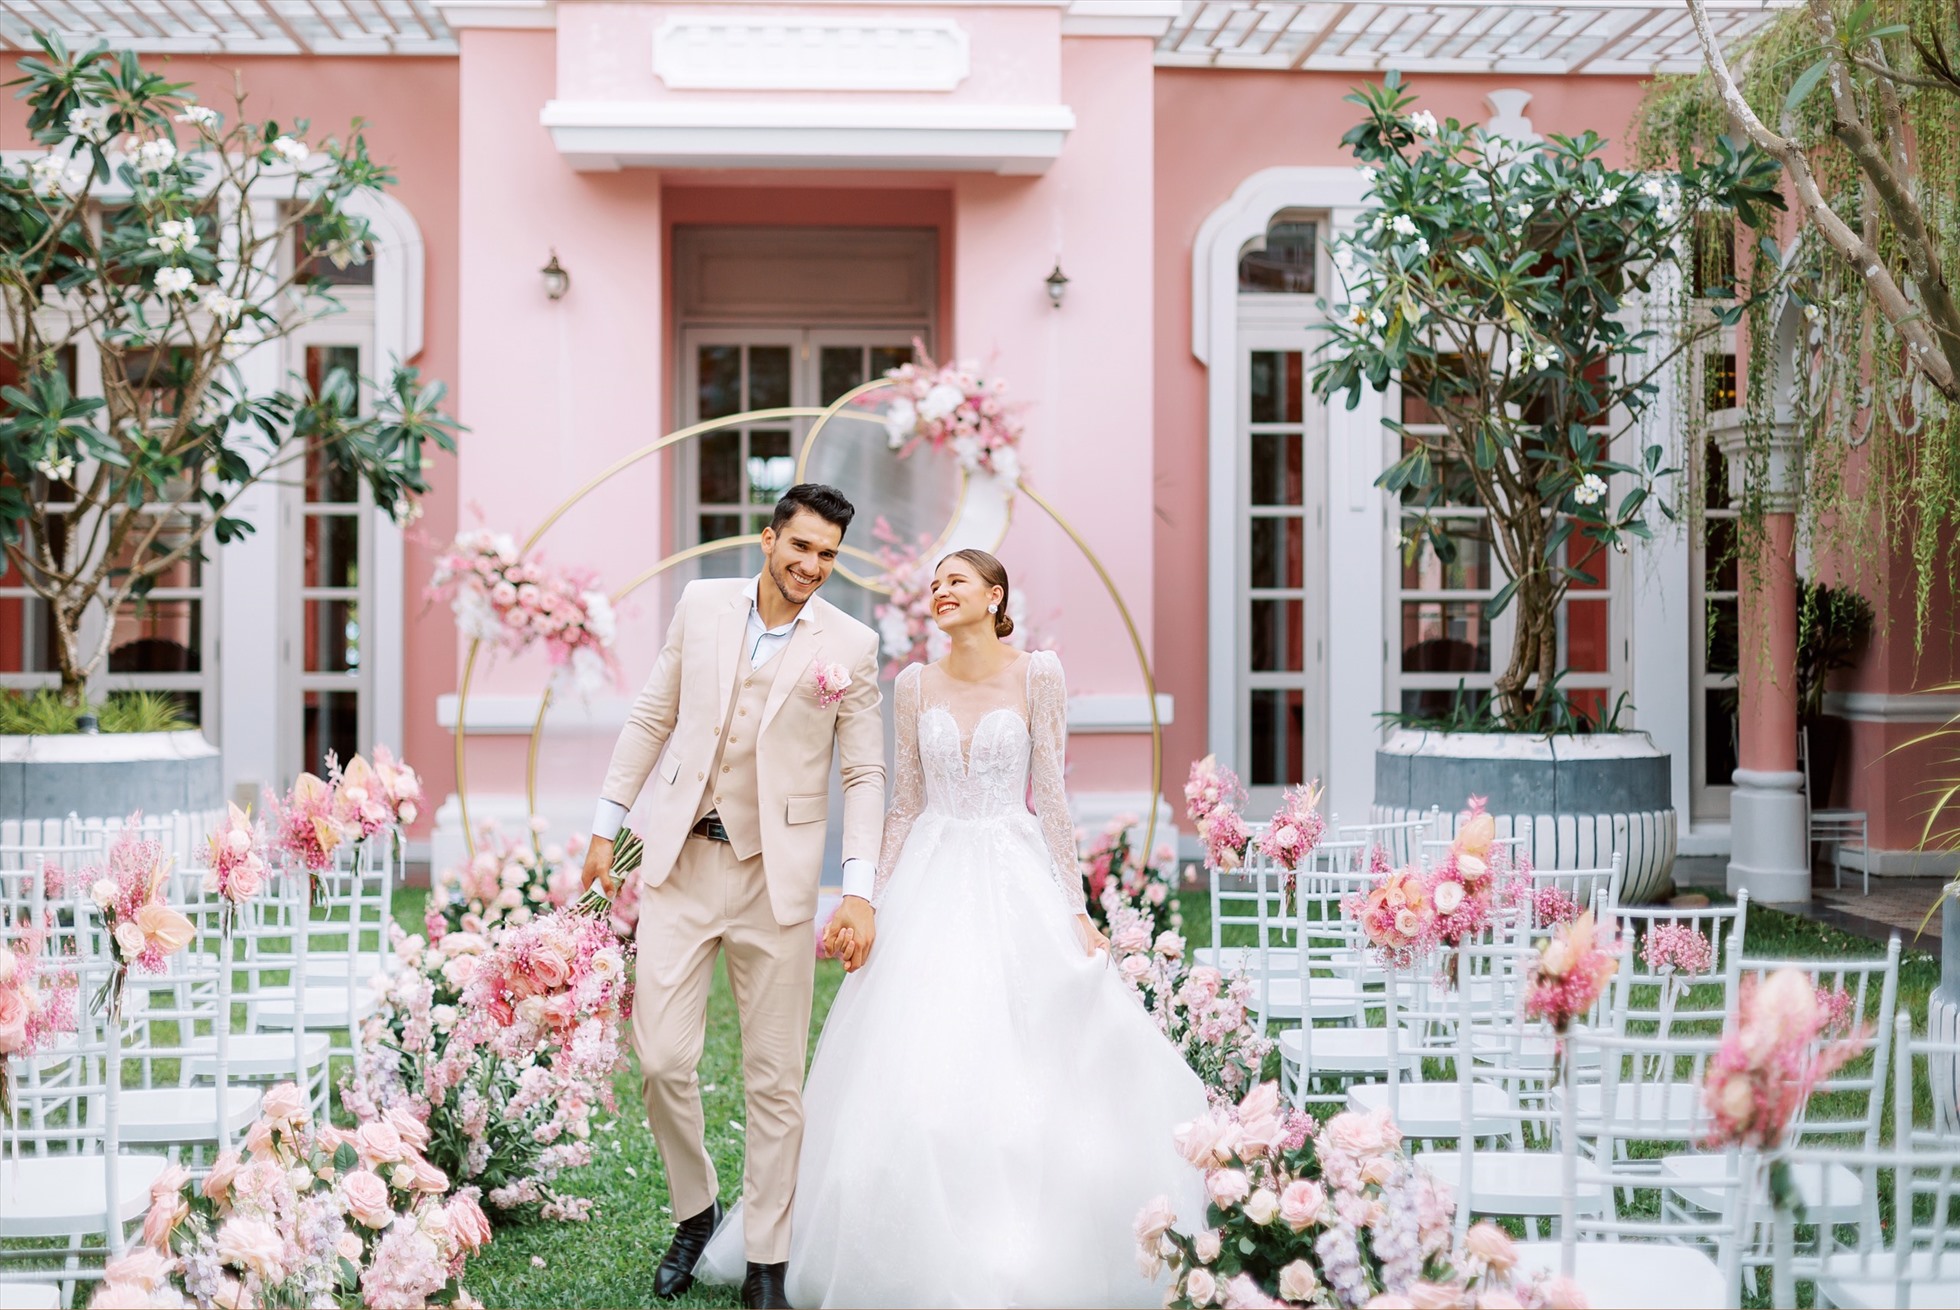 JW Marriott Phu Quoc Emerald Bay tọa lạc bên Bãi Kem 3 năm liên tiếp đạt danh hiệu “Khu nghỉ dưỡng dành cho đám cưới hàng đầu thế giới”.